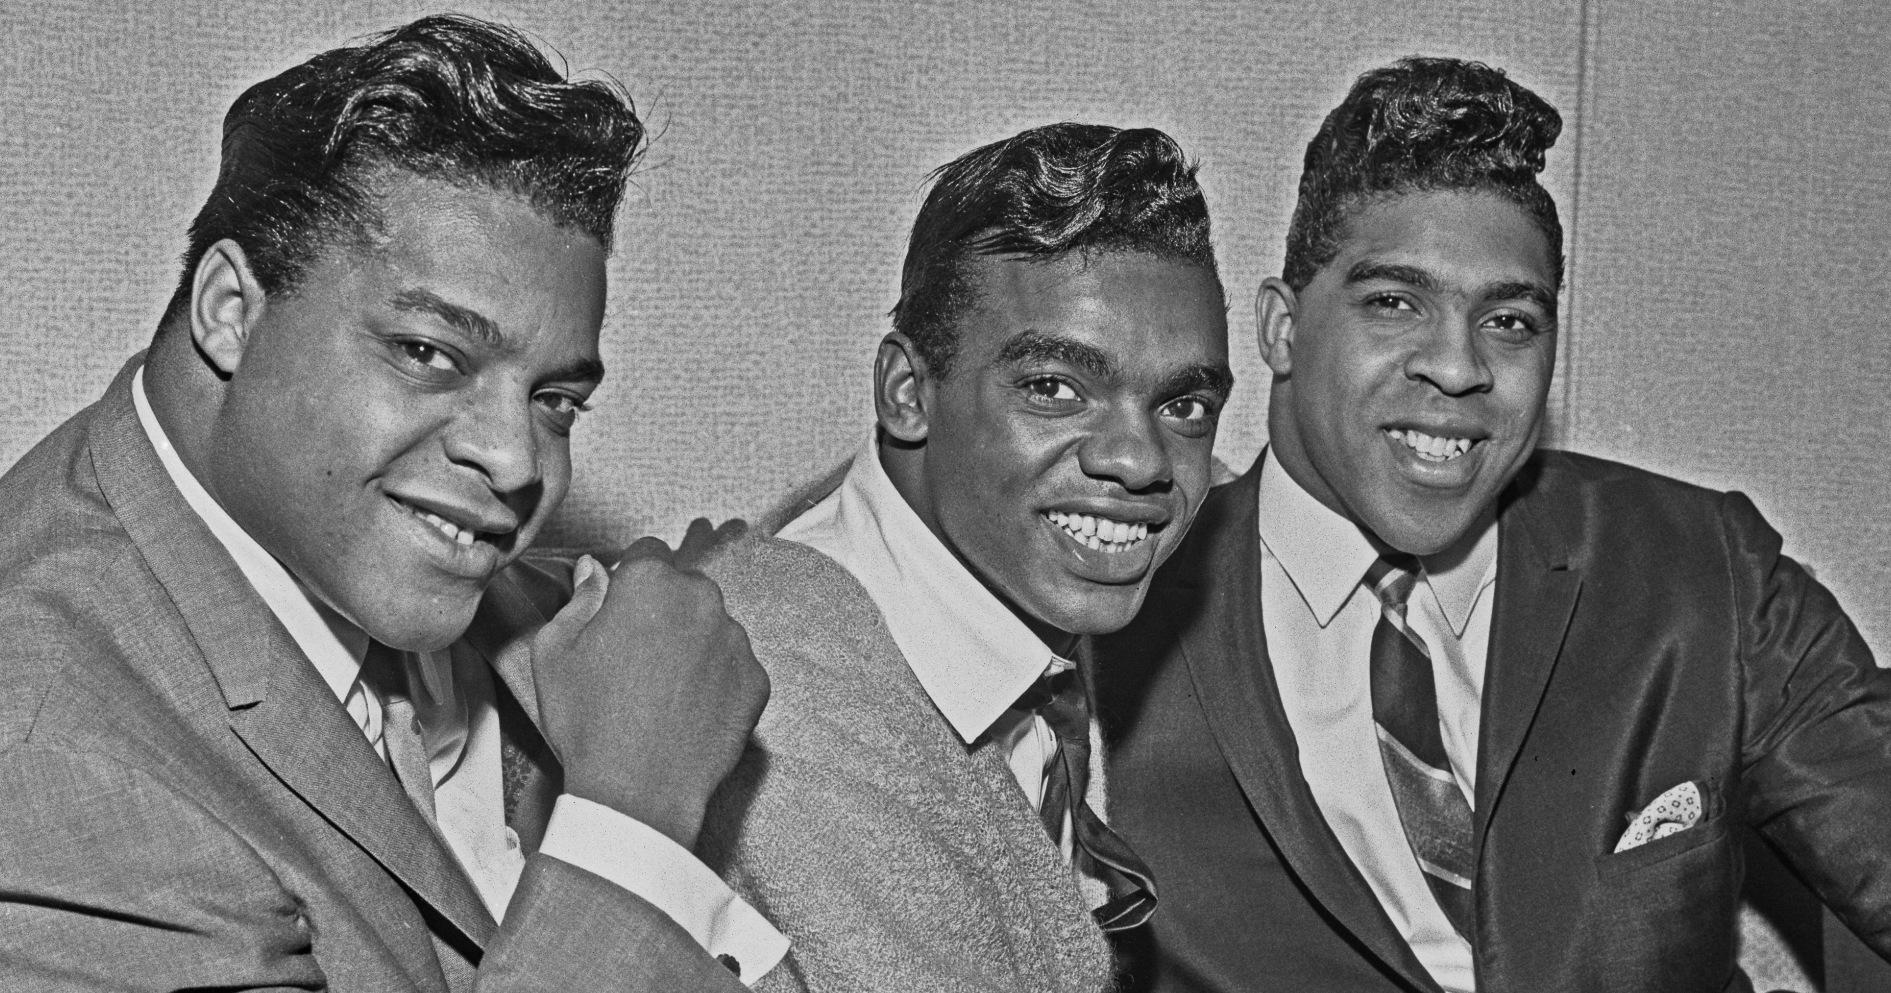 Amerikanisches Gesangstrio The Isley Brothers, Großbritannien, 24. Oktober 1964. Von links nach rechts sind es die Brüder O'Kelly Isley Jr., Ronald Isley und Rudolph Isley. 